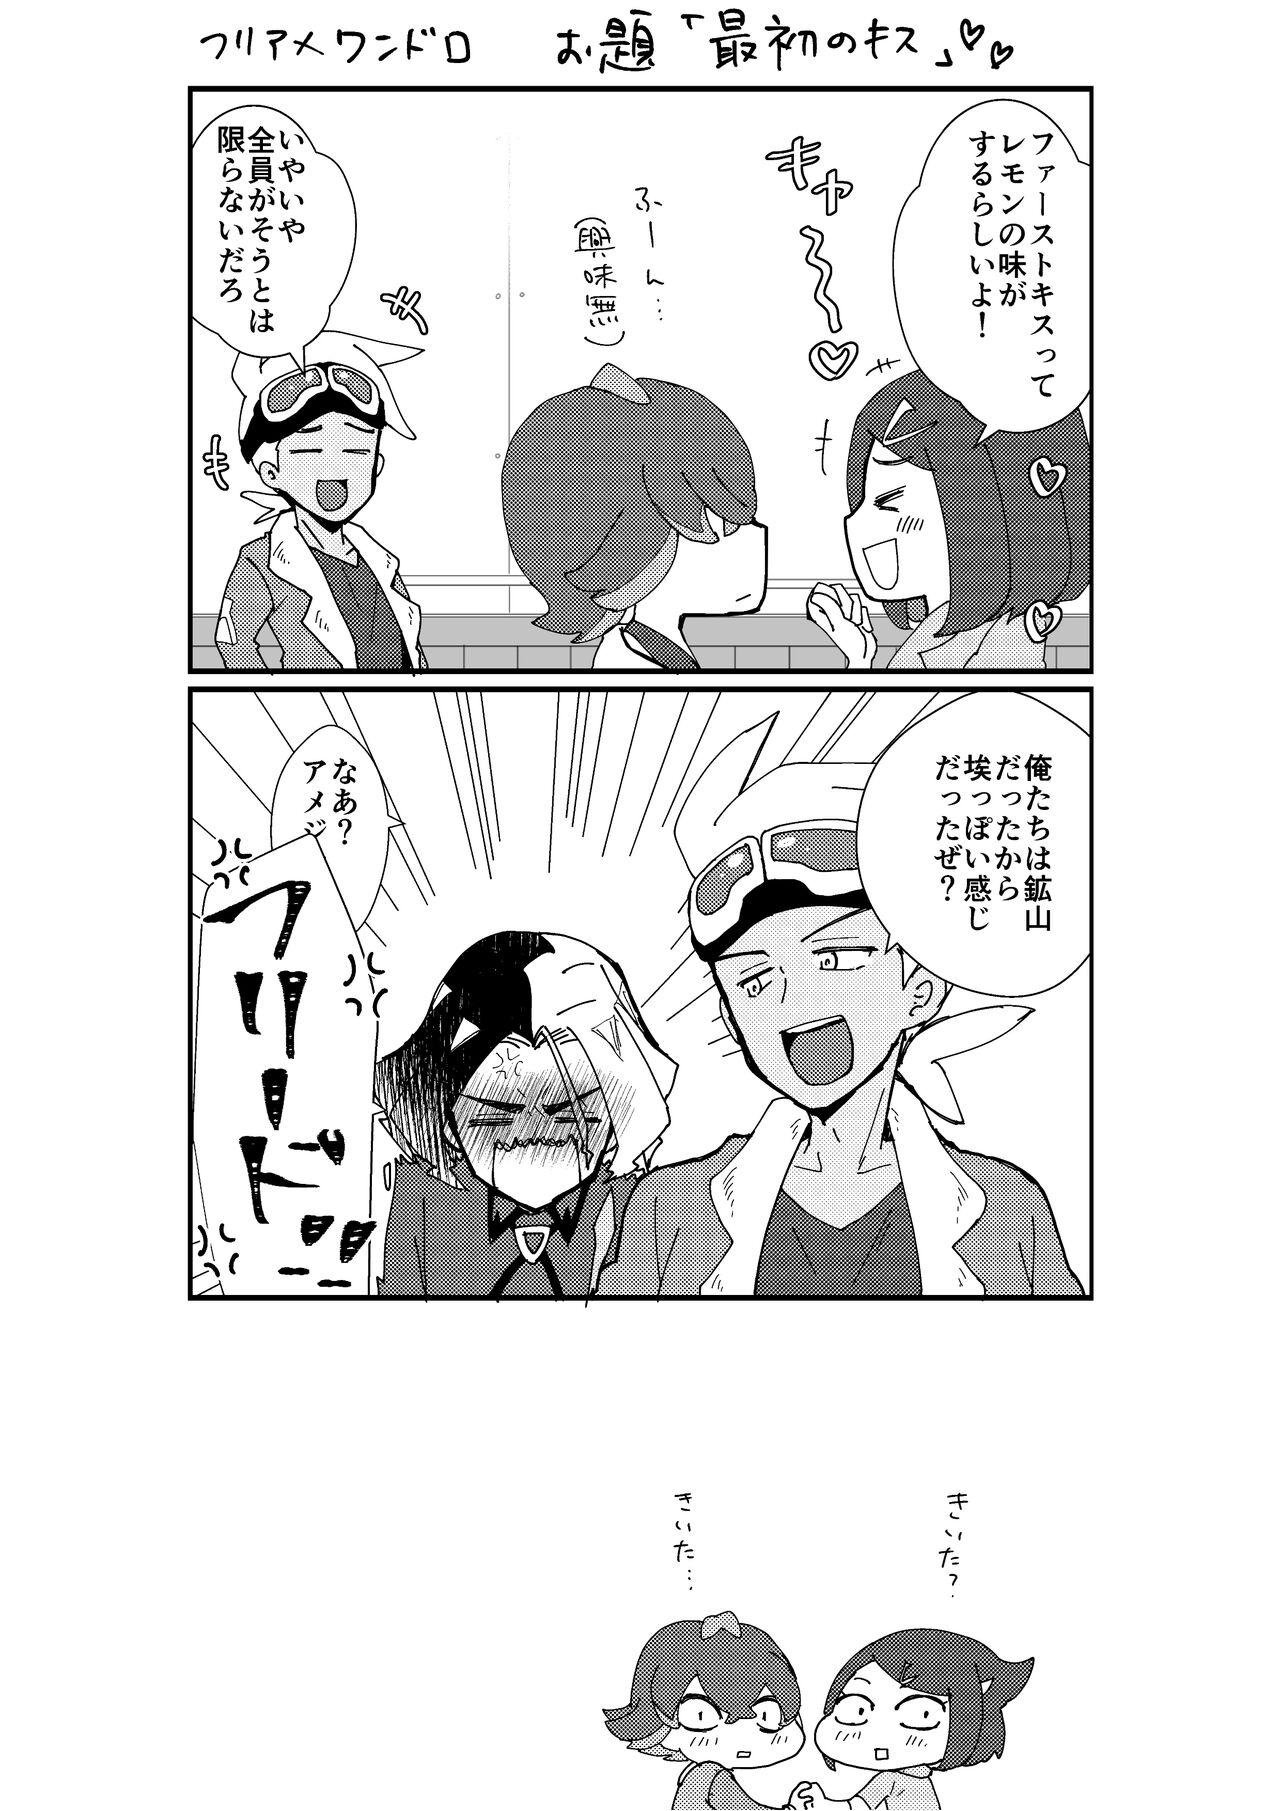 Deflowered Furiame Hanashi 2 - Pokemon | pocket monsters Cuzinho - Page 11